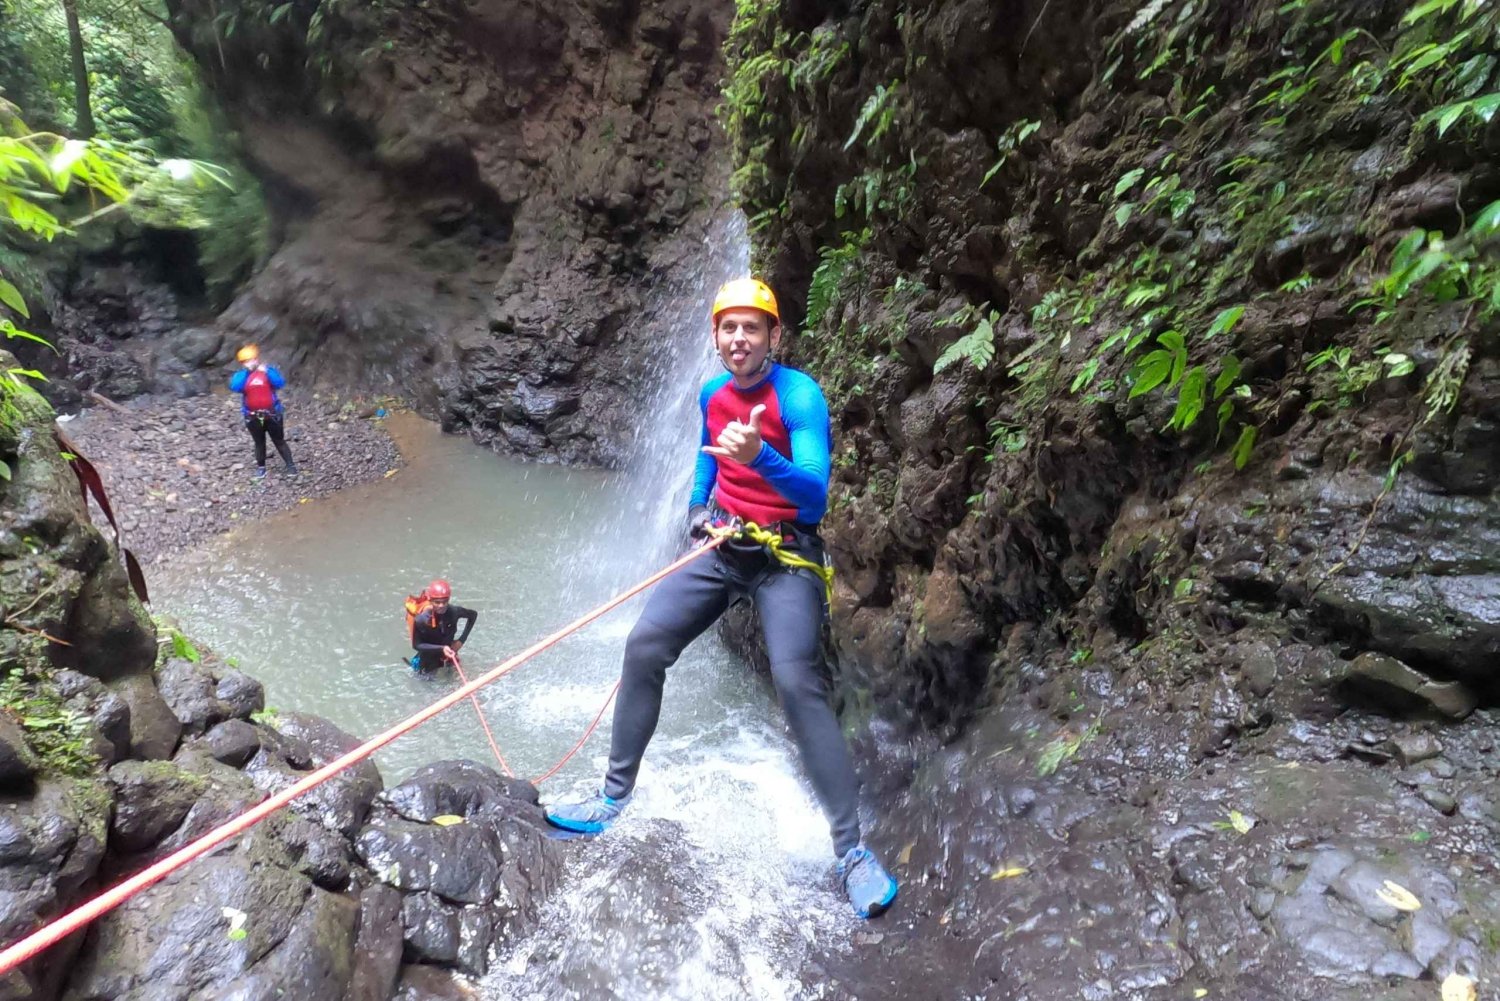 Bali: Canyoning Adventure at Gitgit Canyon